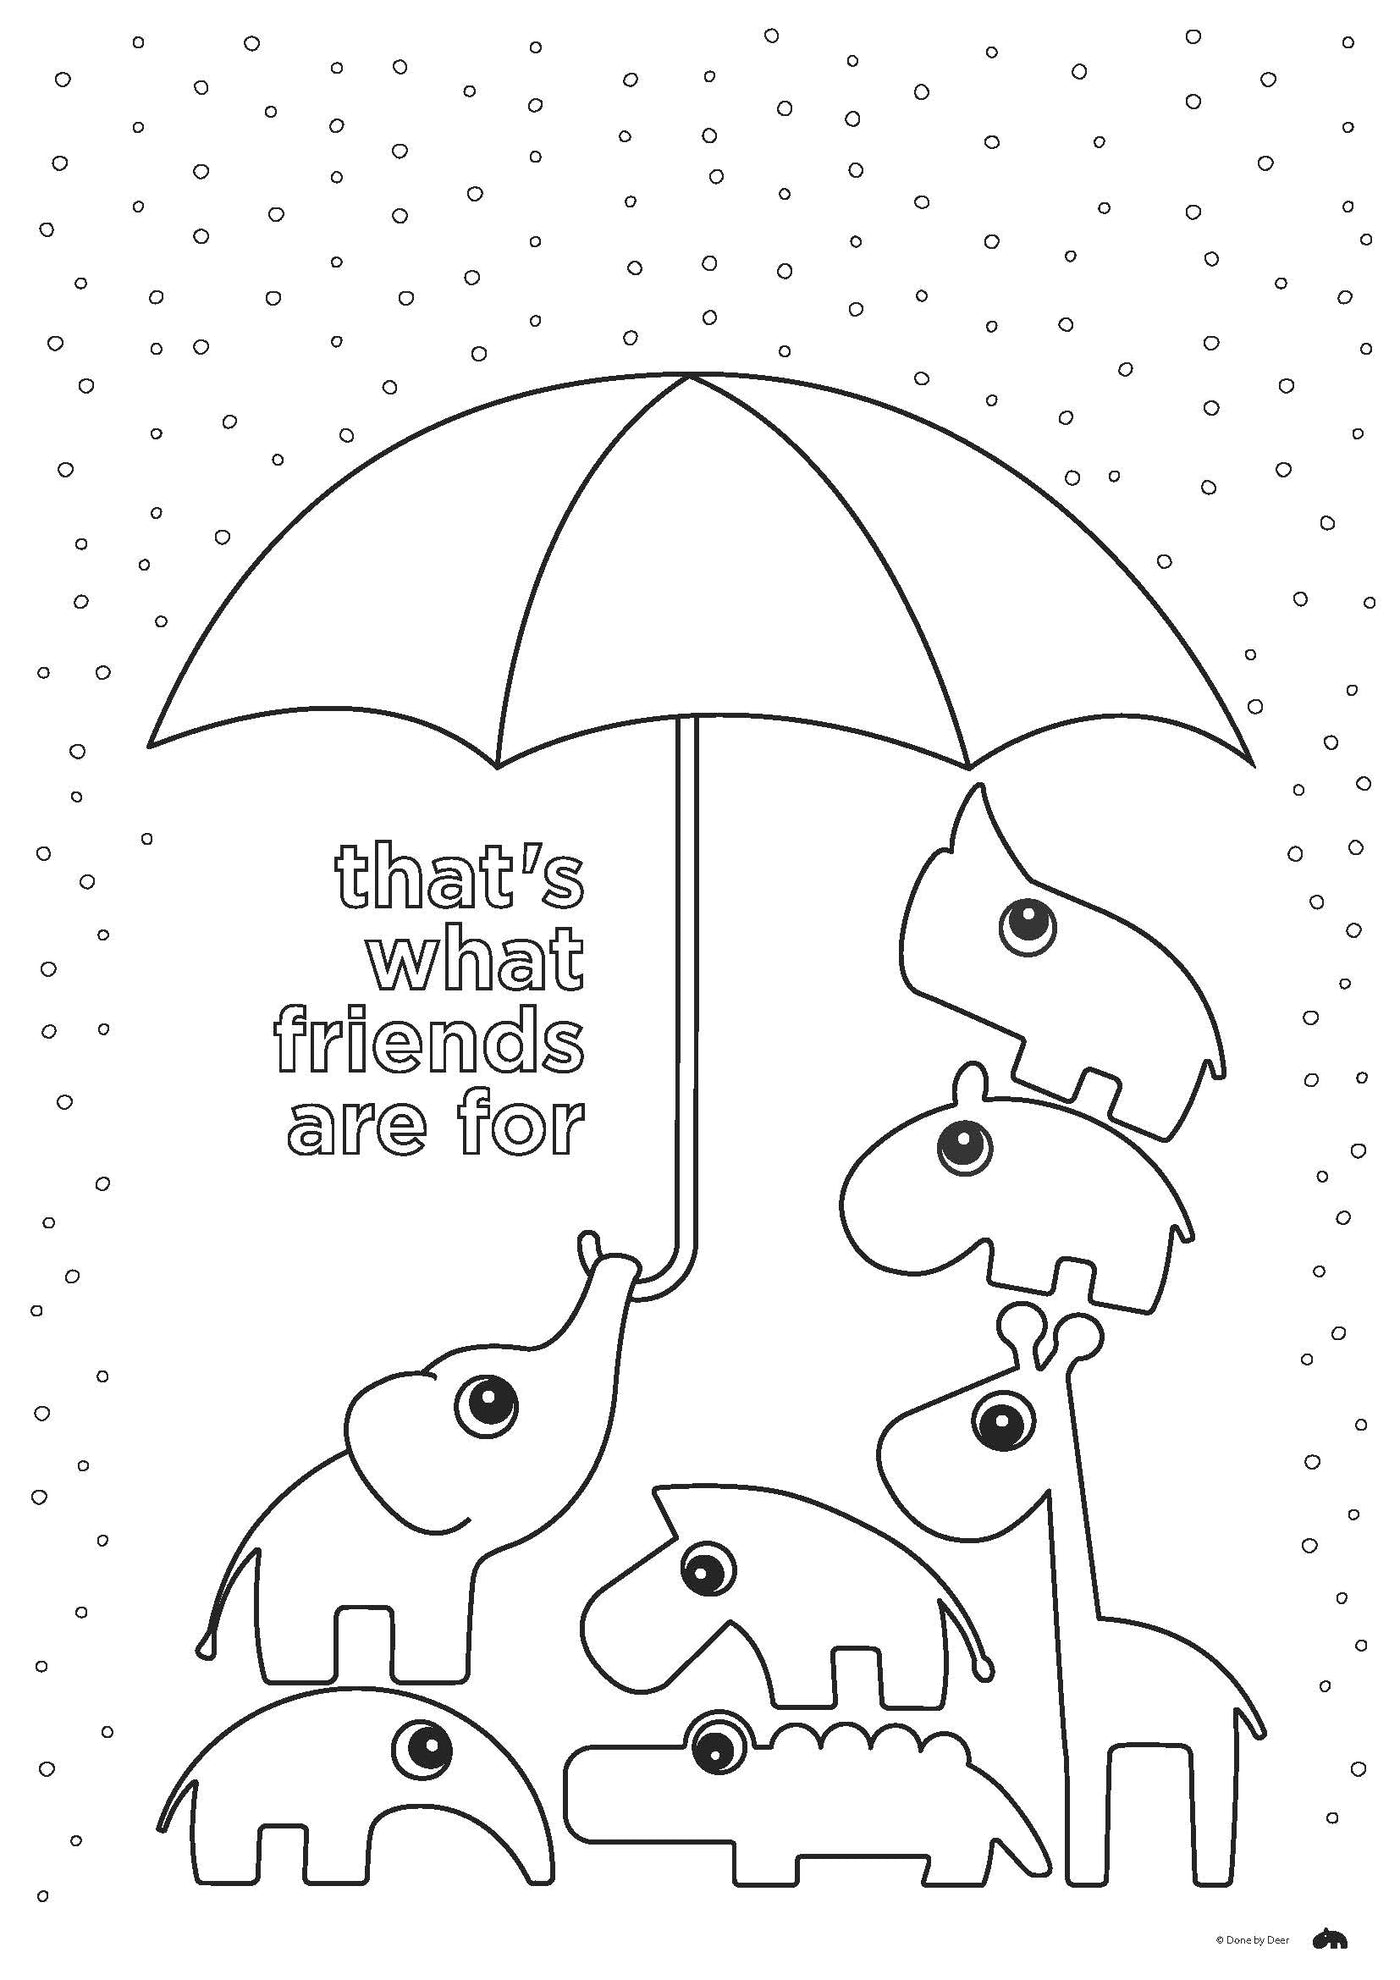 Deer friends under umbrella in the rain